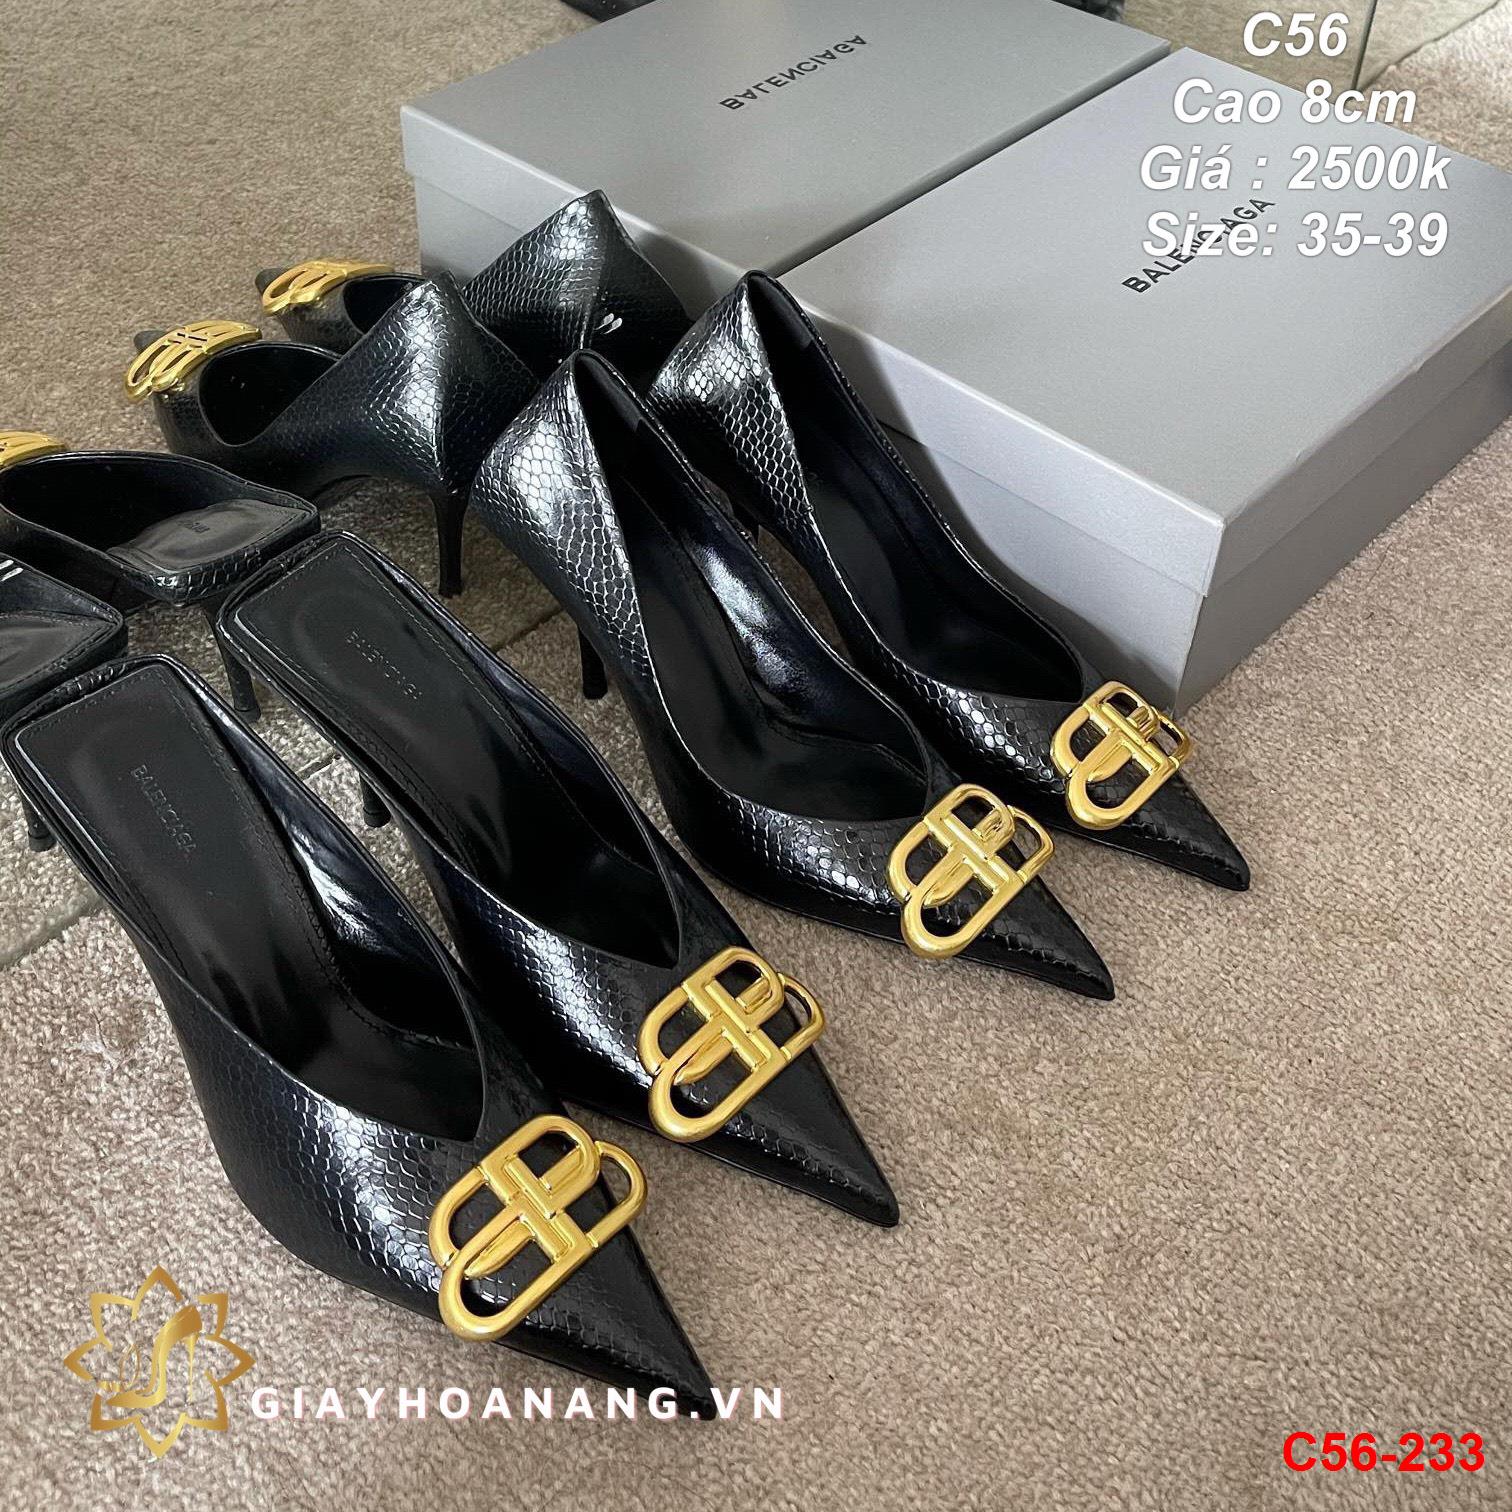 C56-233 Balenciaga giày cao 8cm siêu cấp